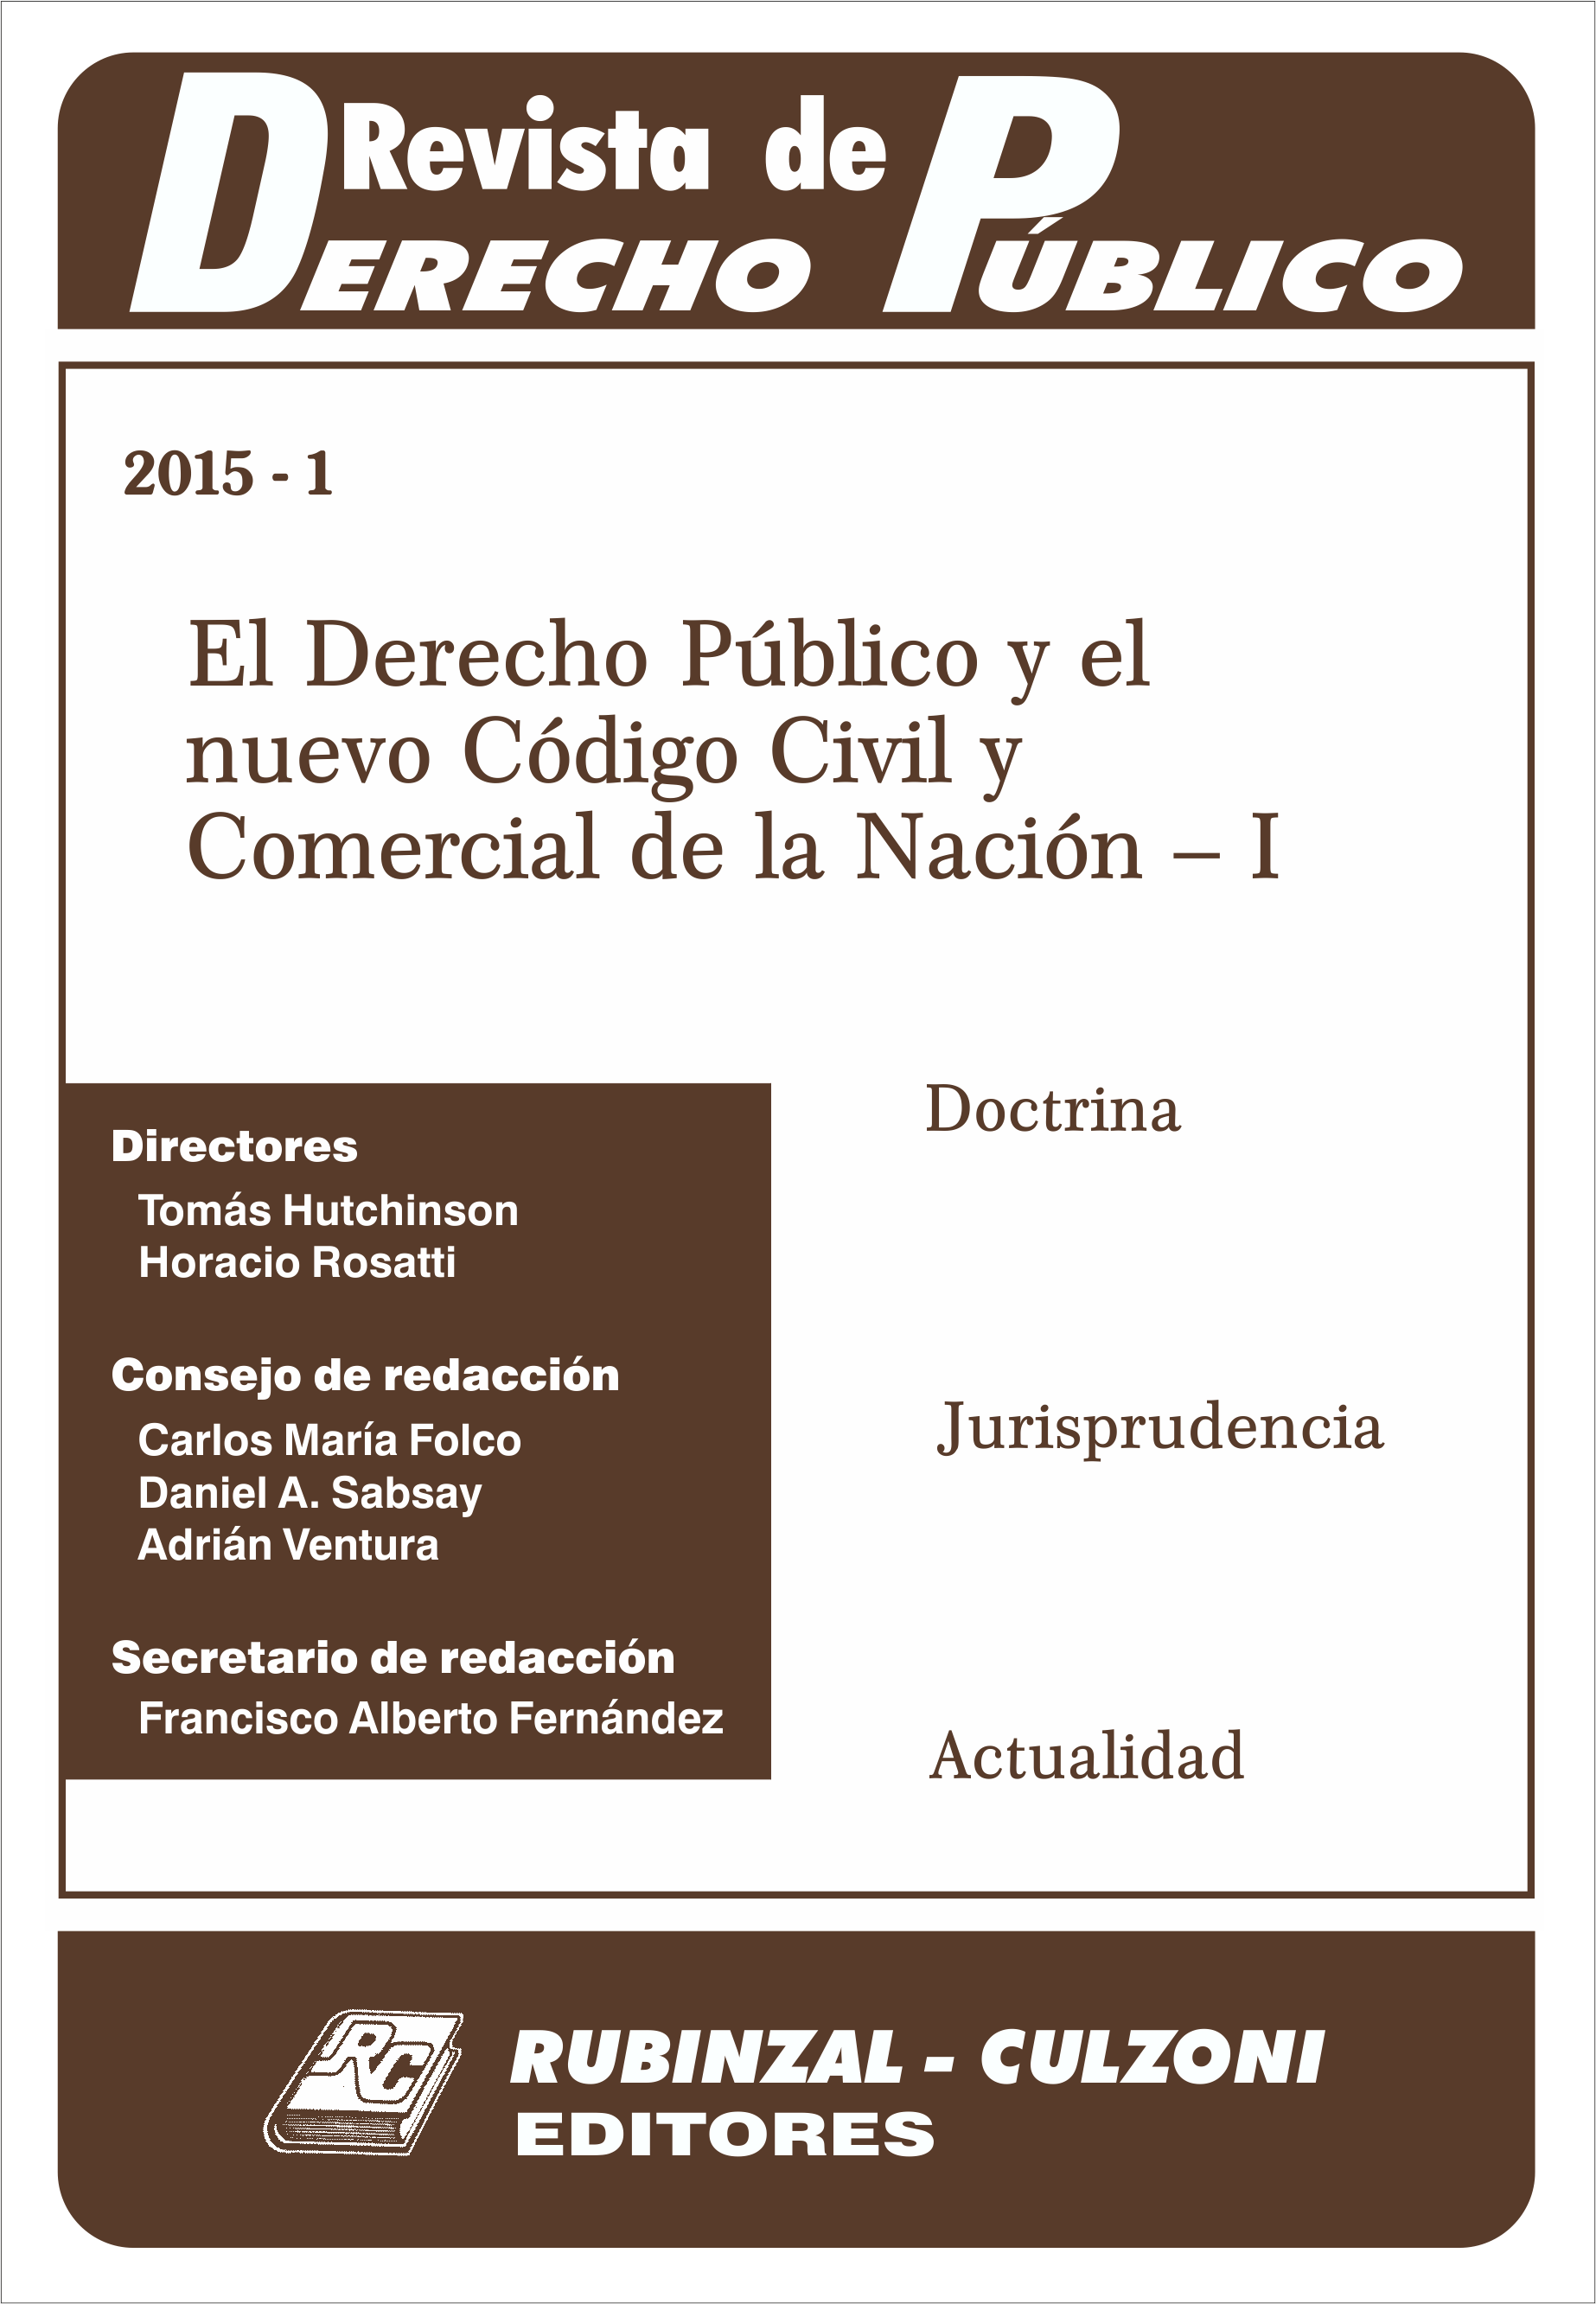 Revista de Derecho Público - El Derecho Público y el nuevo Código Civil y Comercial de la Nación - I.